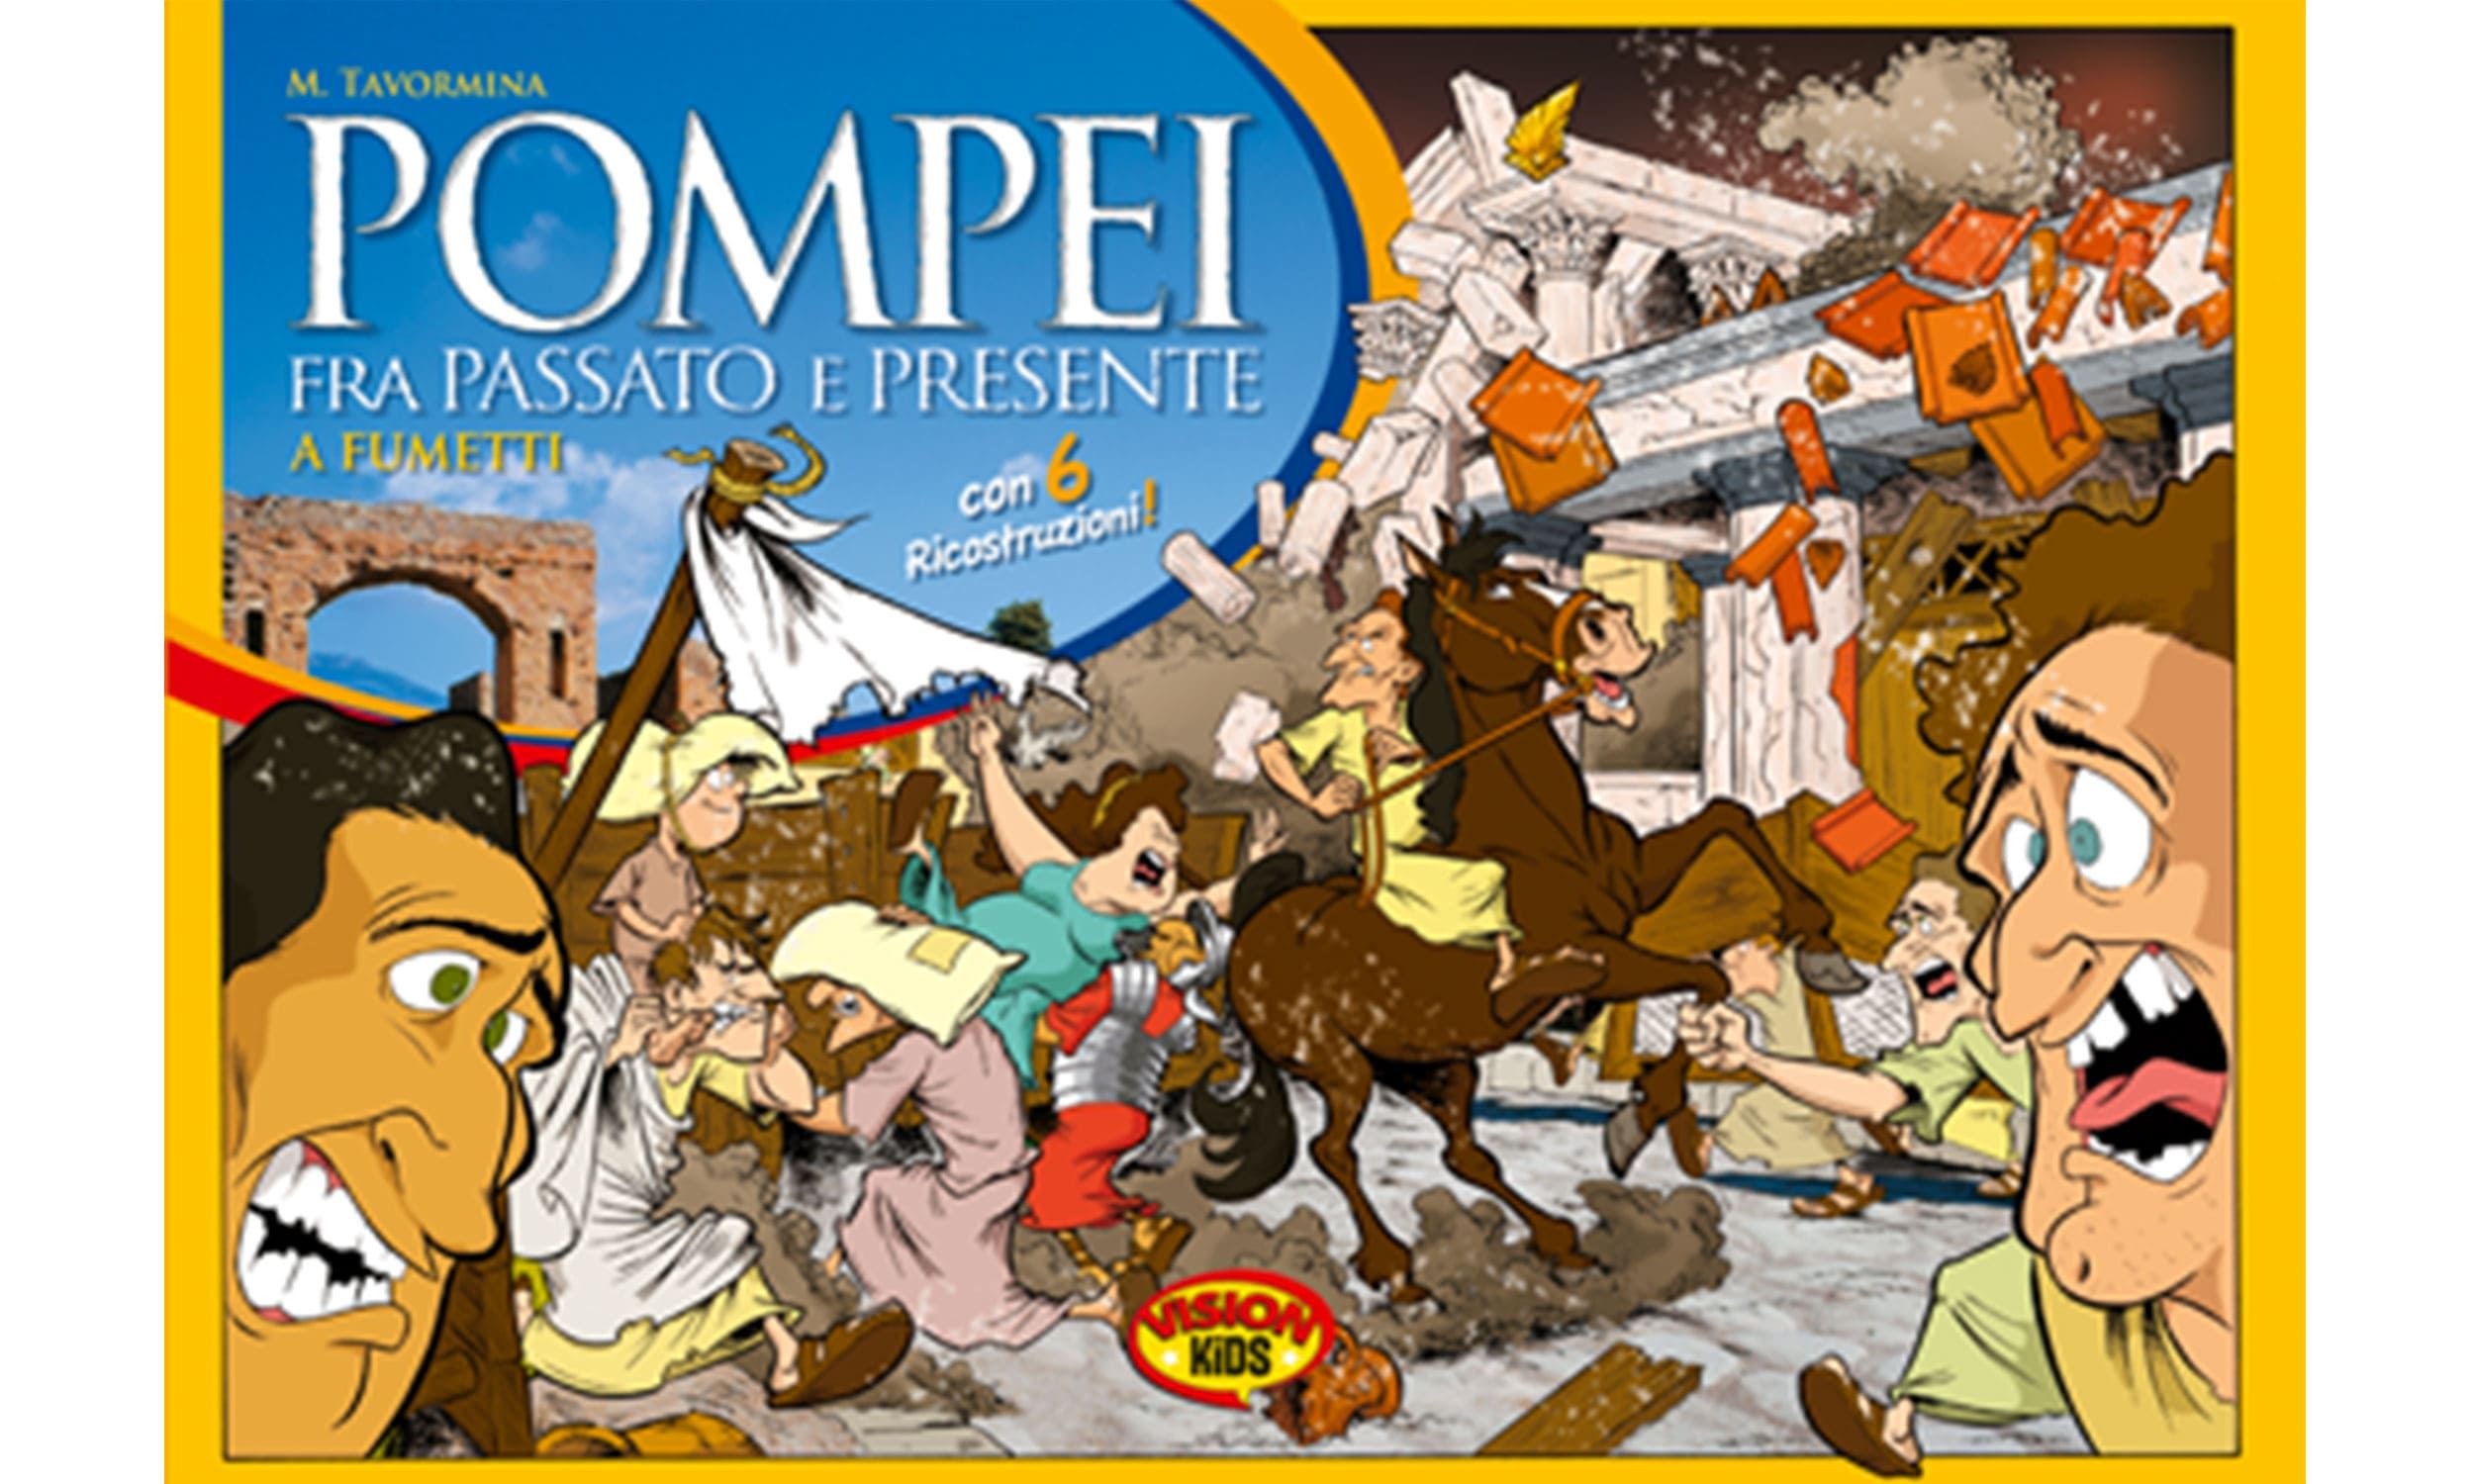 Pompei – Fra passato e presente